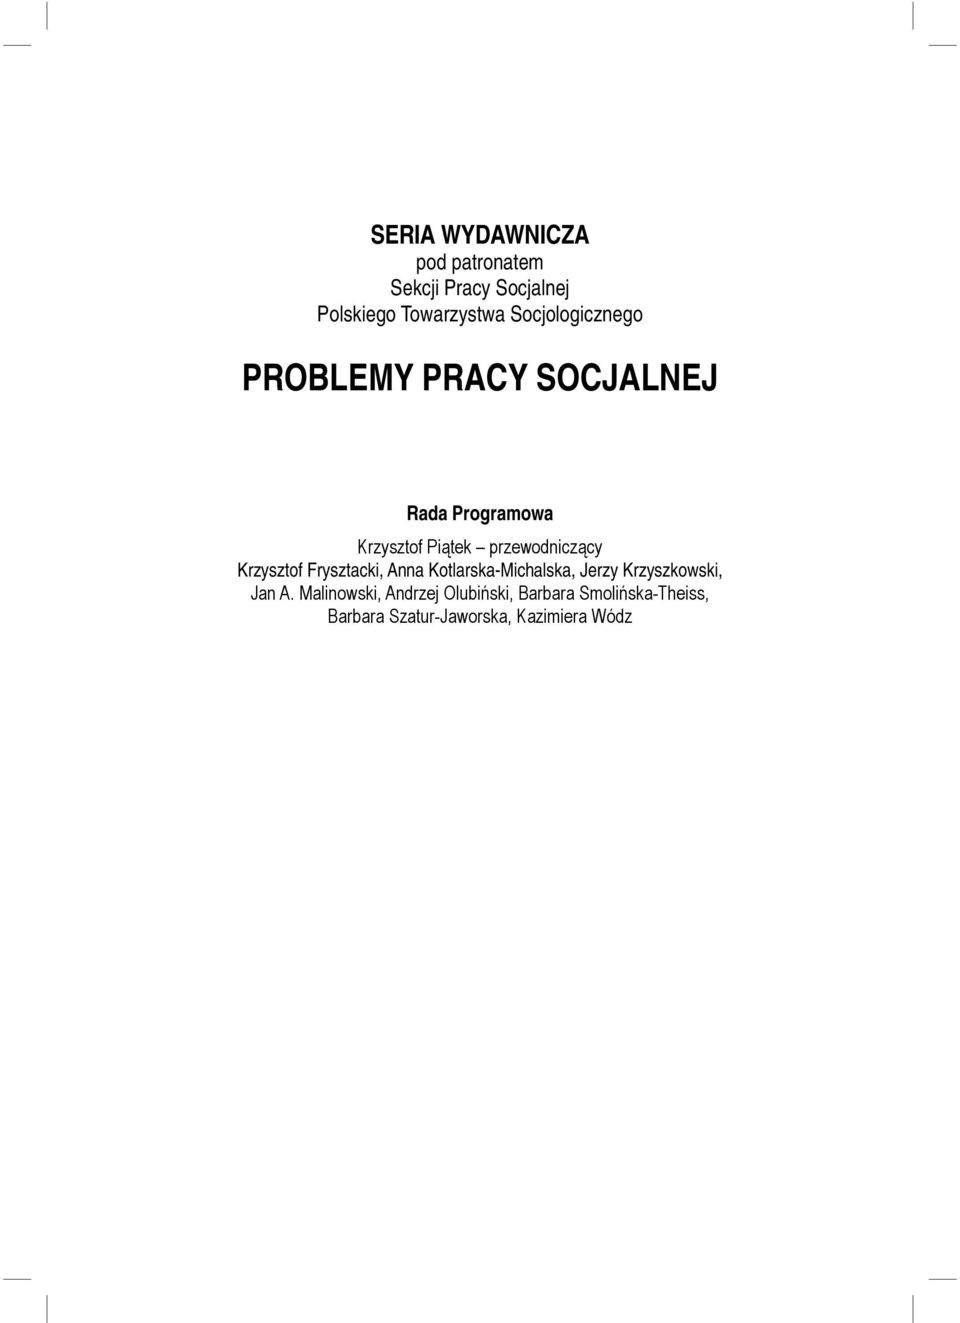 PROBLEMY PRACY SOCJALNEJ Rada Programowa Krzysztof